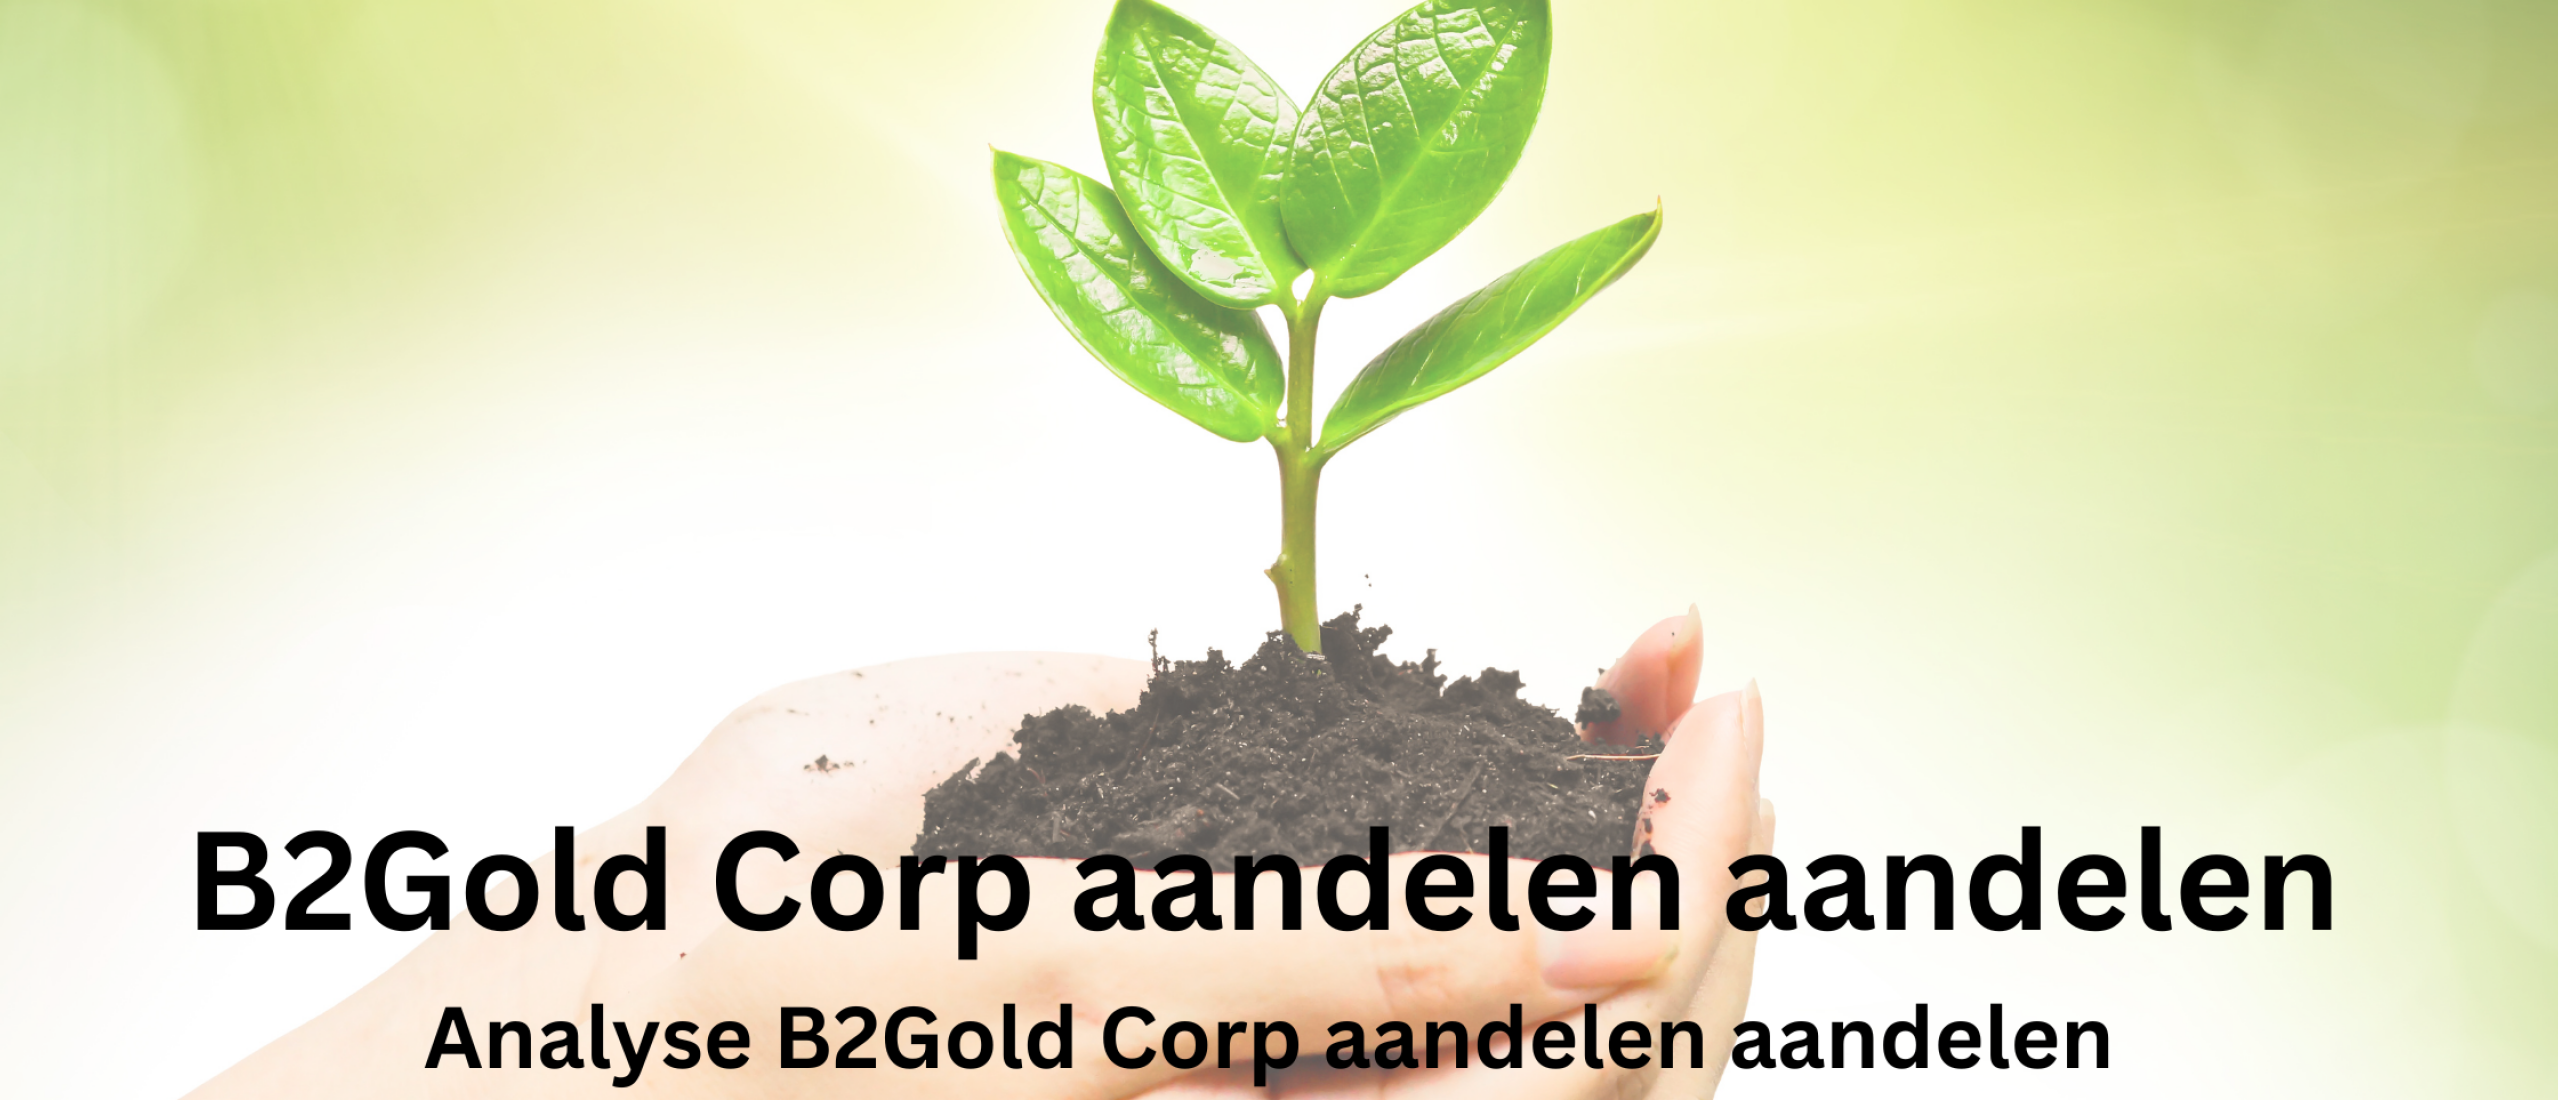 B2Gold Corp aandelen